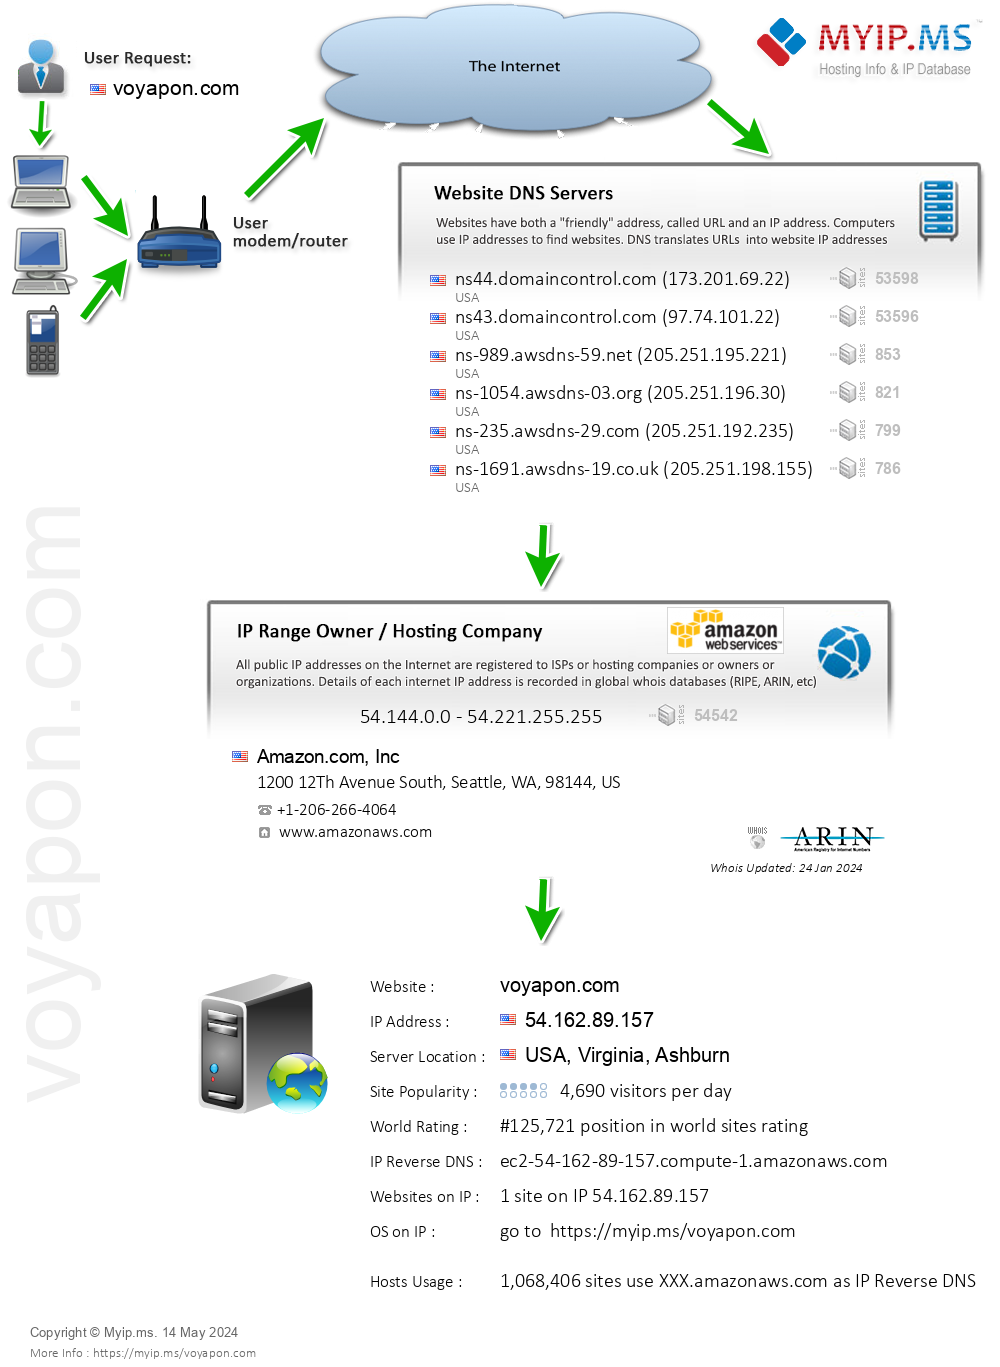 Voyapon.com - Website Hosting Visual IP Diagram